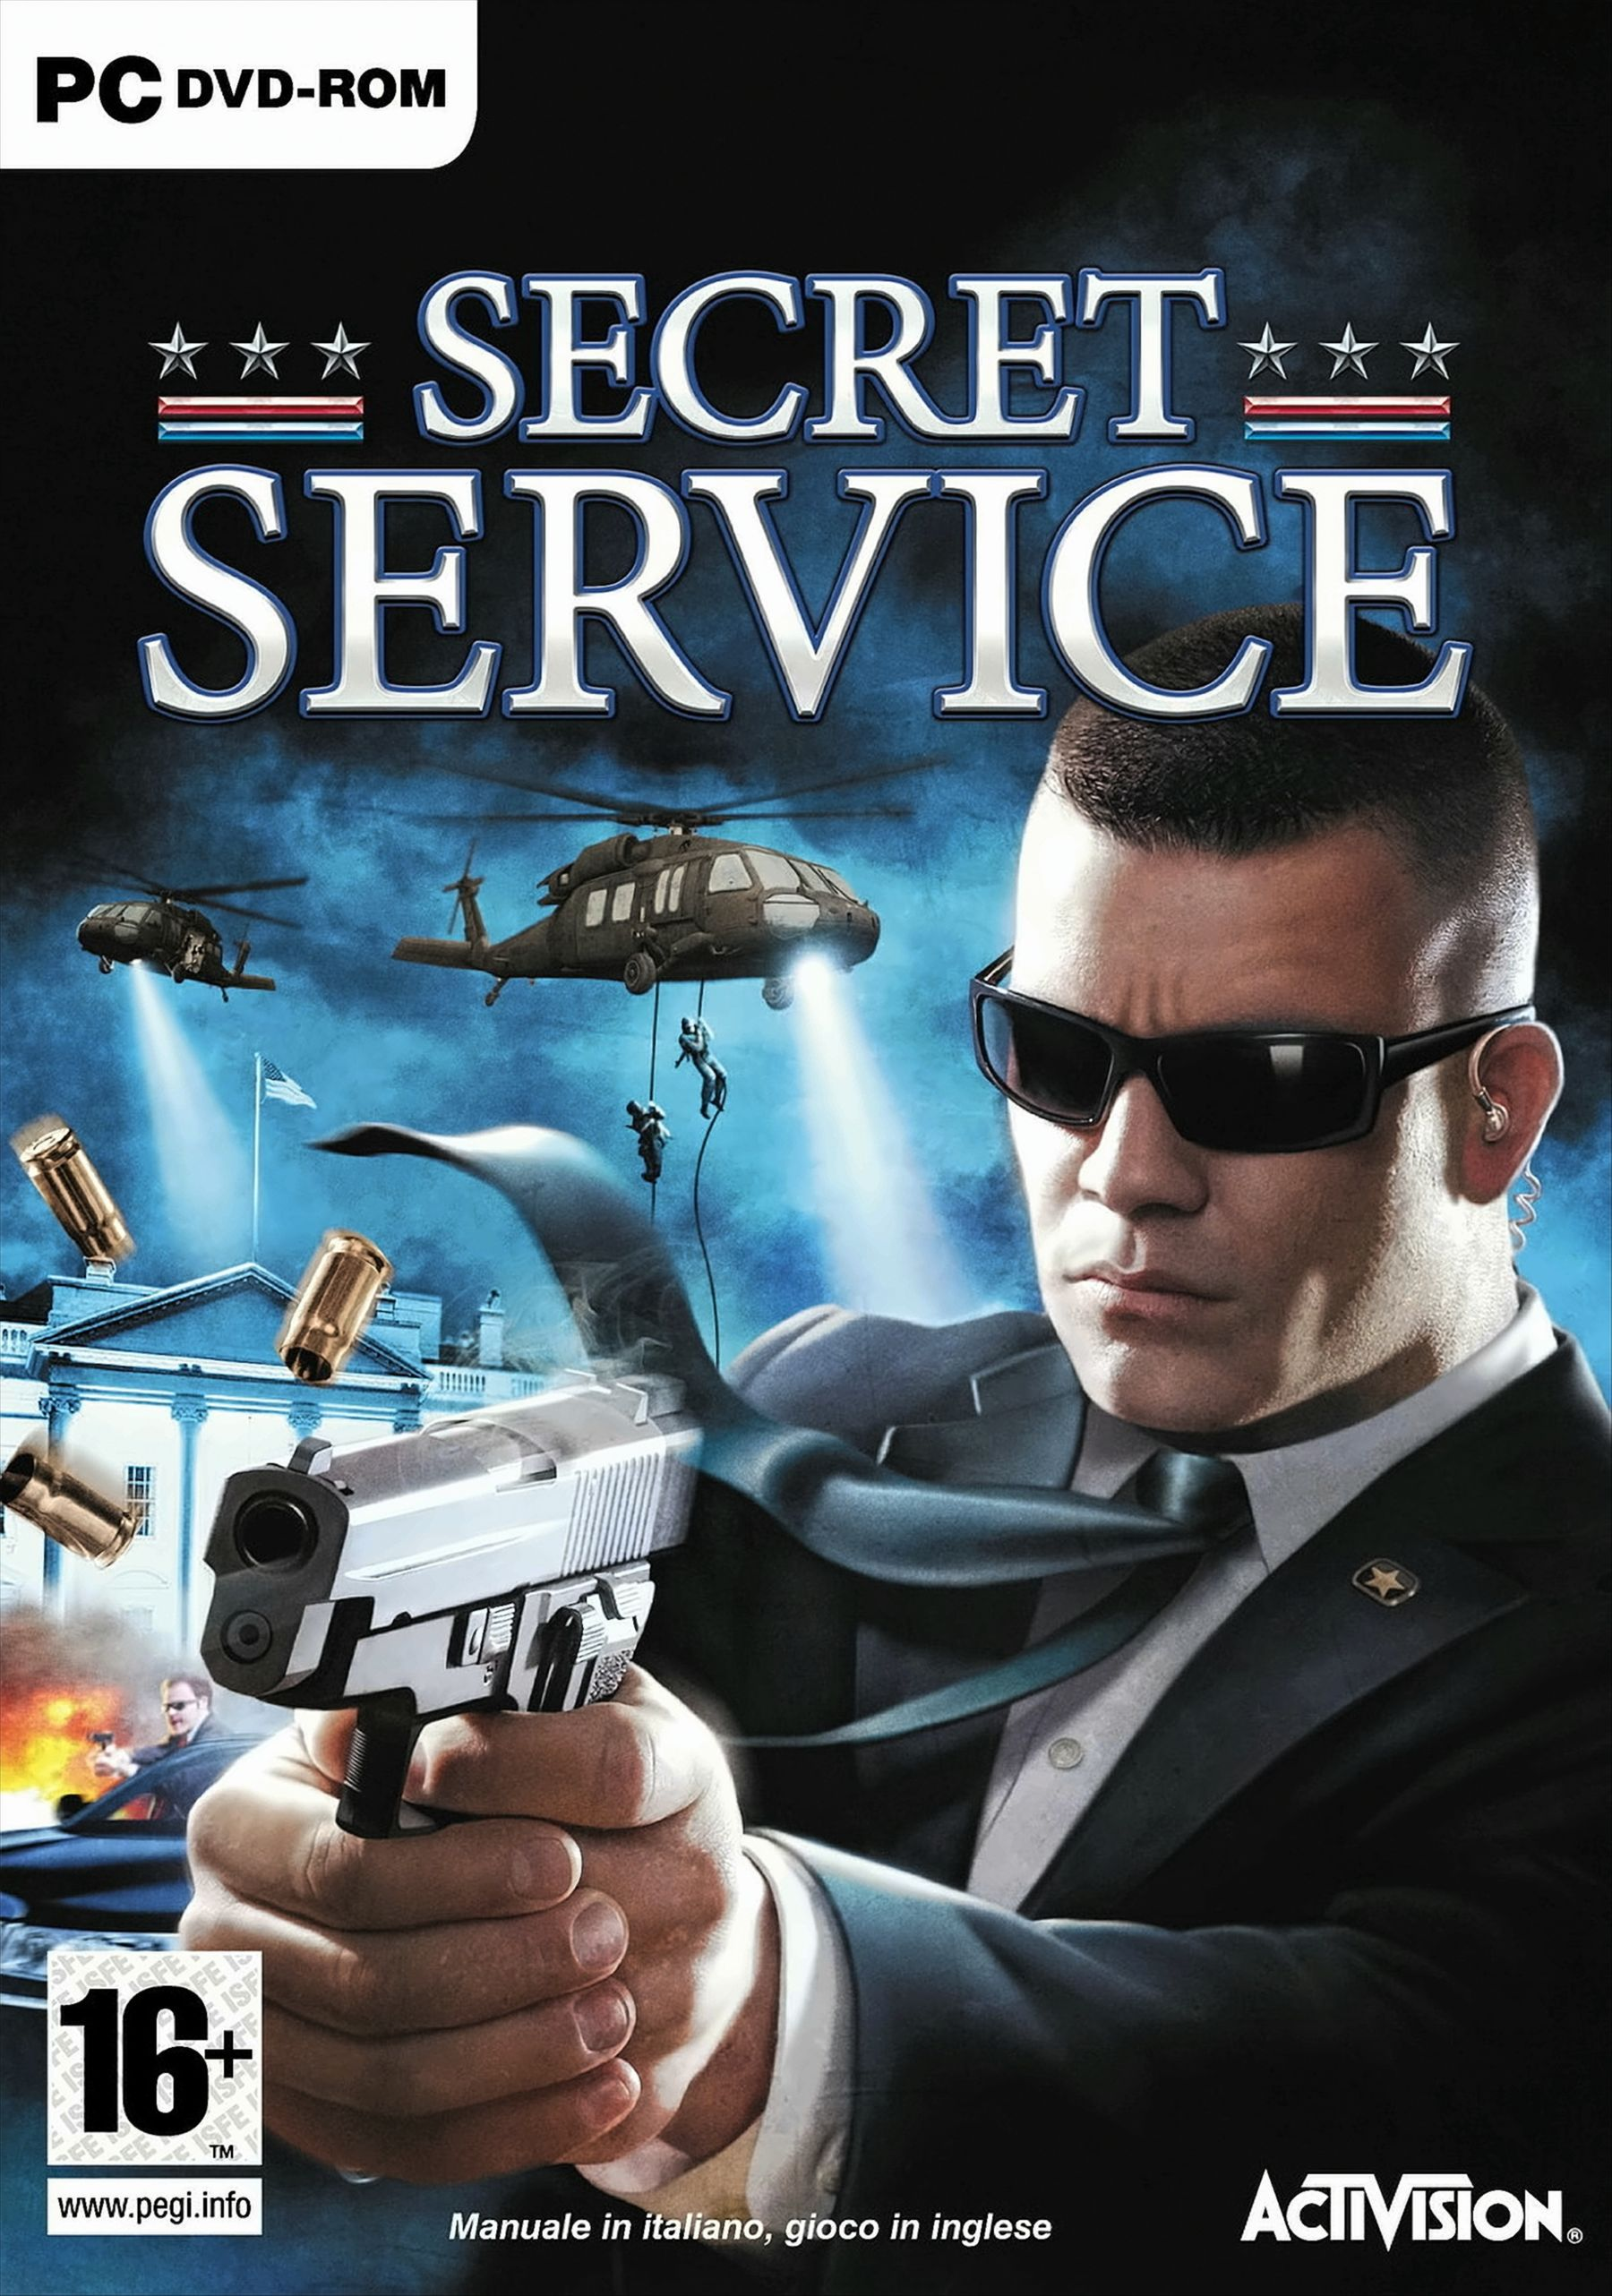 Secret - Service [PC]